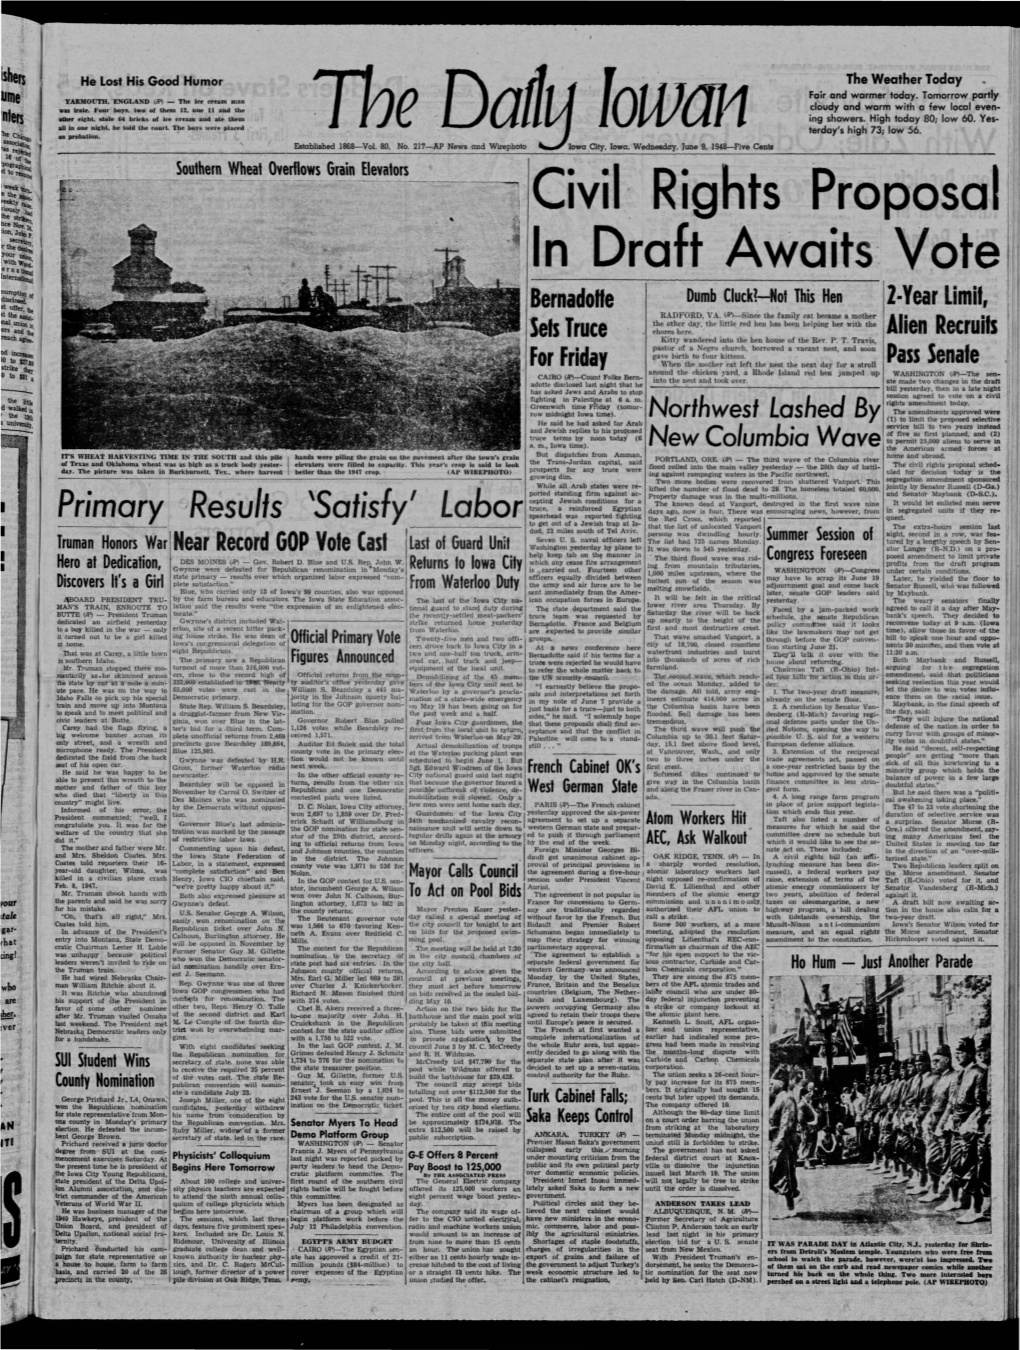 Daily Iowan (Iowa City, Iowa), 1948-06-09